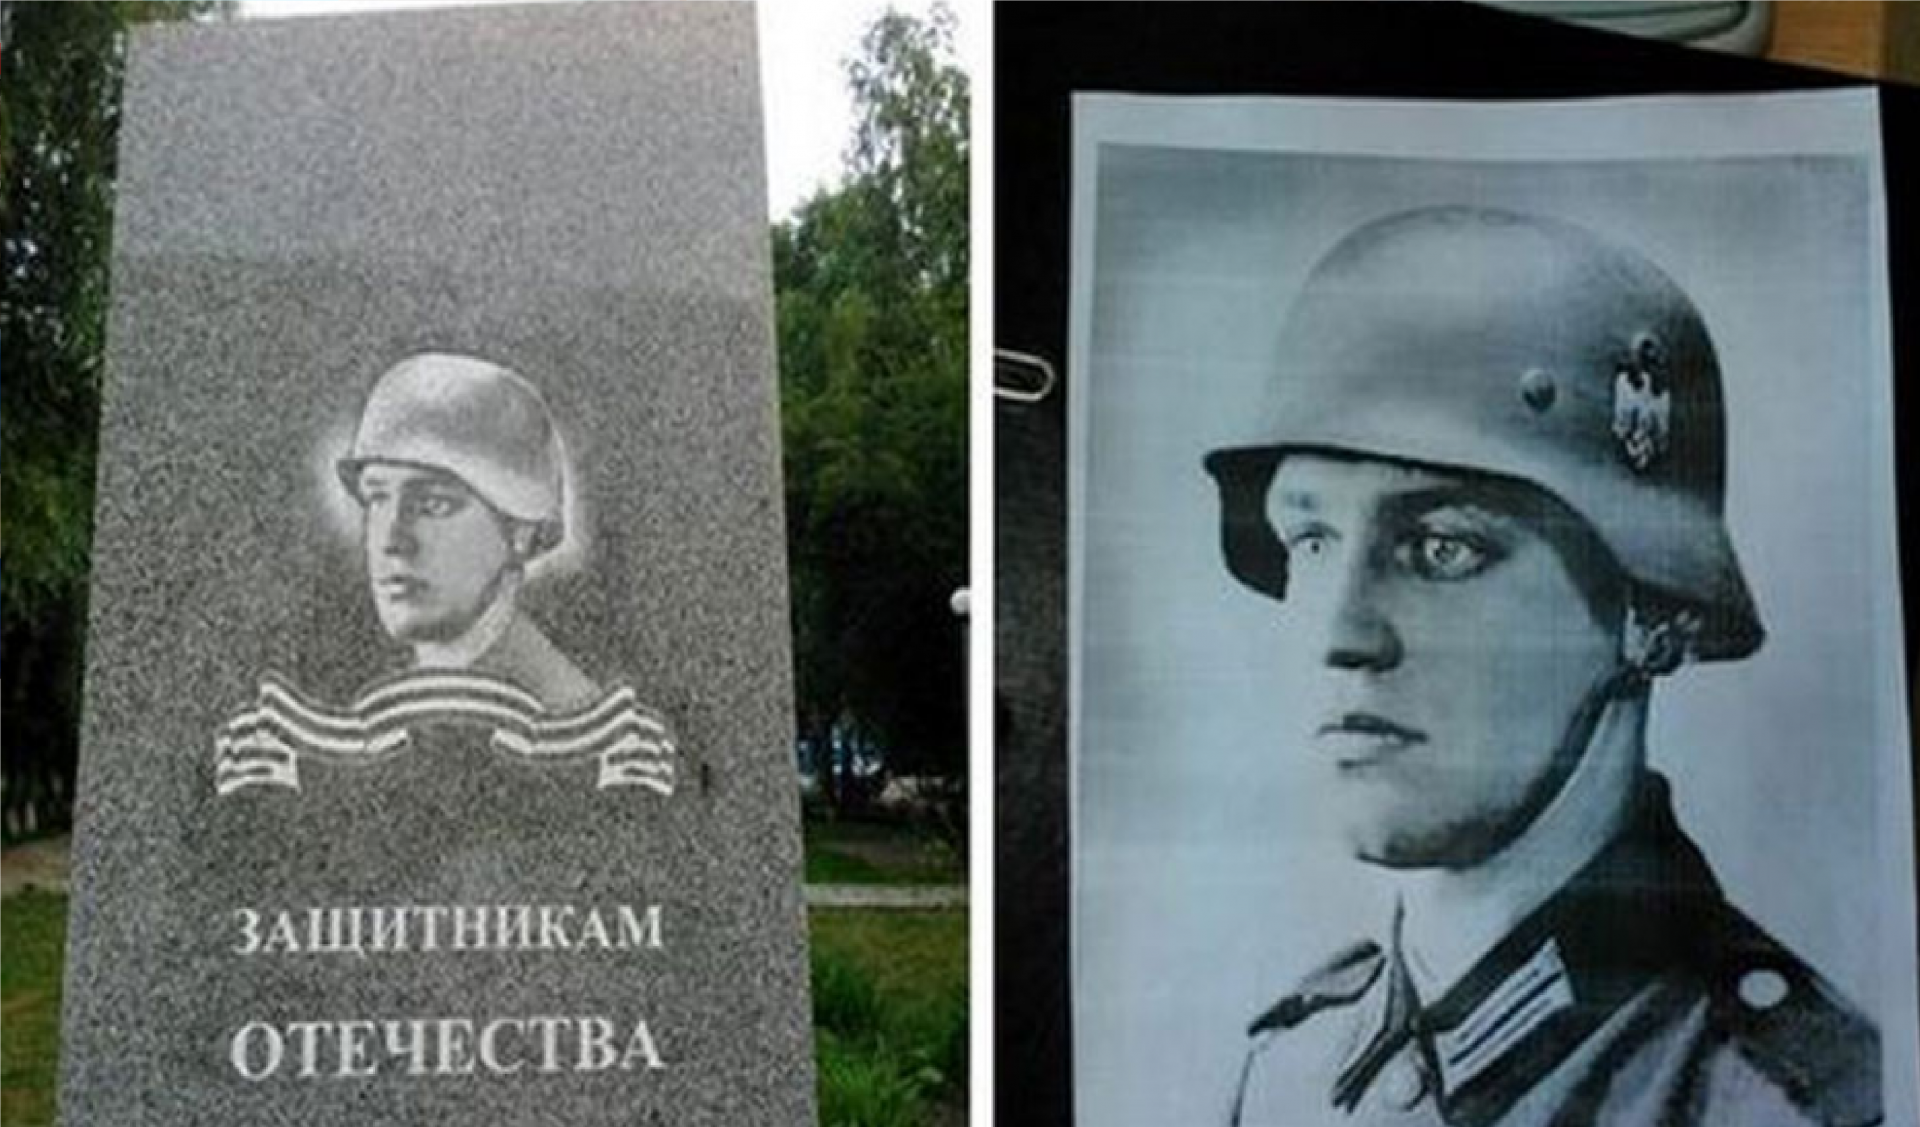 V roce 2015 skupina komunistů v Tobolsku odhalila památník obránců vlasti, která použila Goldbergův ikonický portrét omylem jako obraz vojáka Rudé armády na desce. 